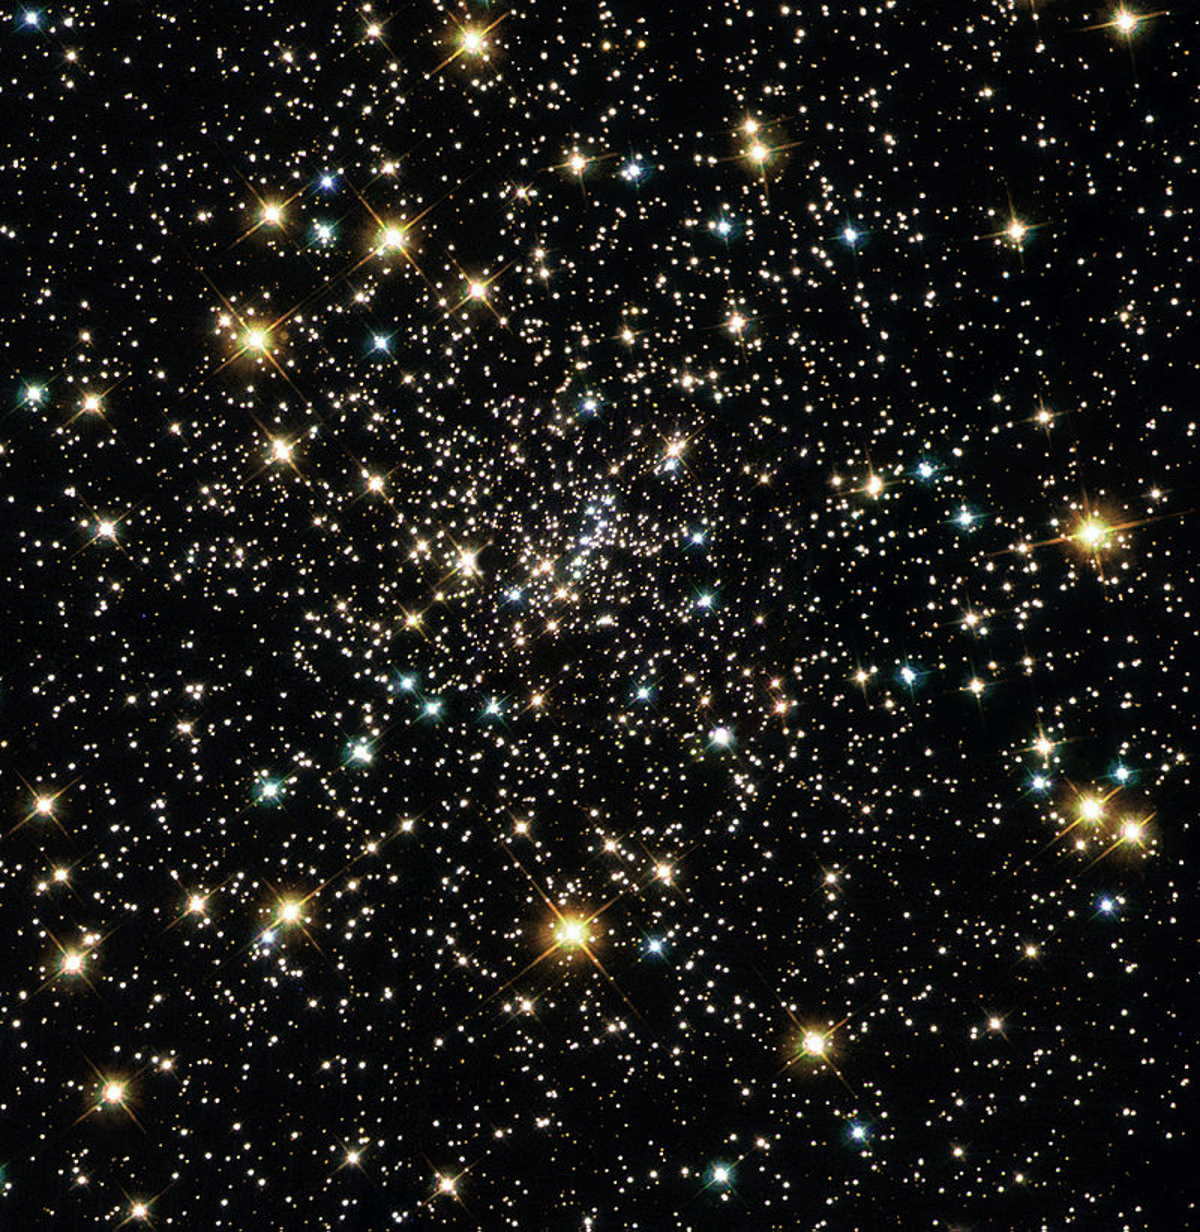 NASA, ESA, Hubble Heritage Team / Wikimedia Commons